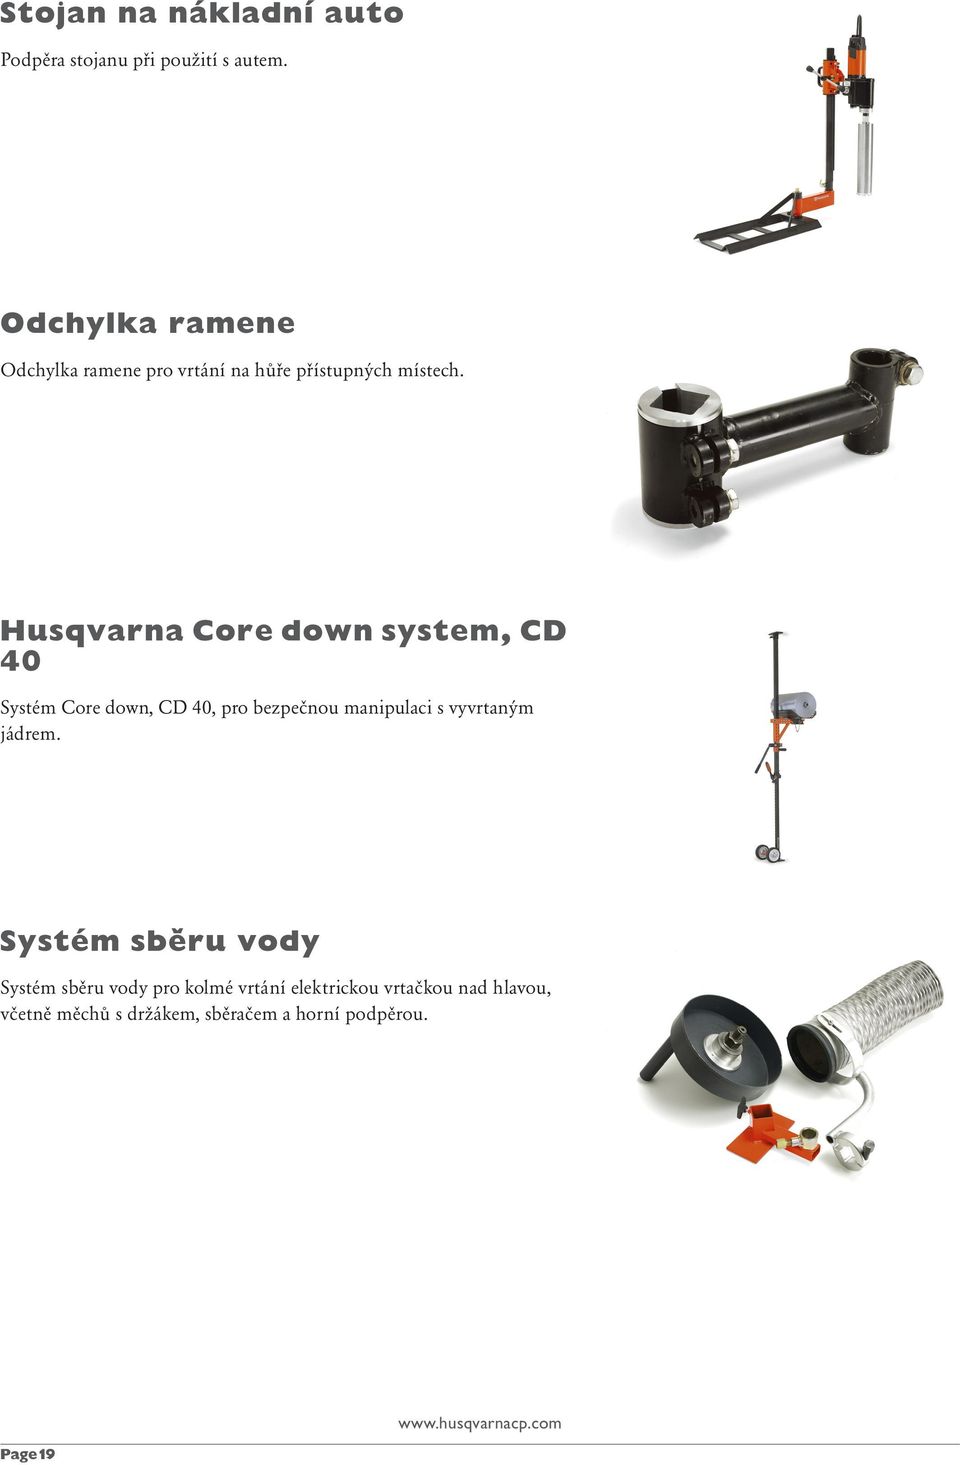 Husqvarna Core down system, CD 40 Systém Core down, CD 40, pro bezpečnou manipulaci s